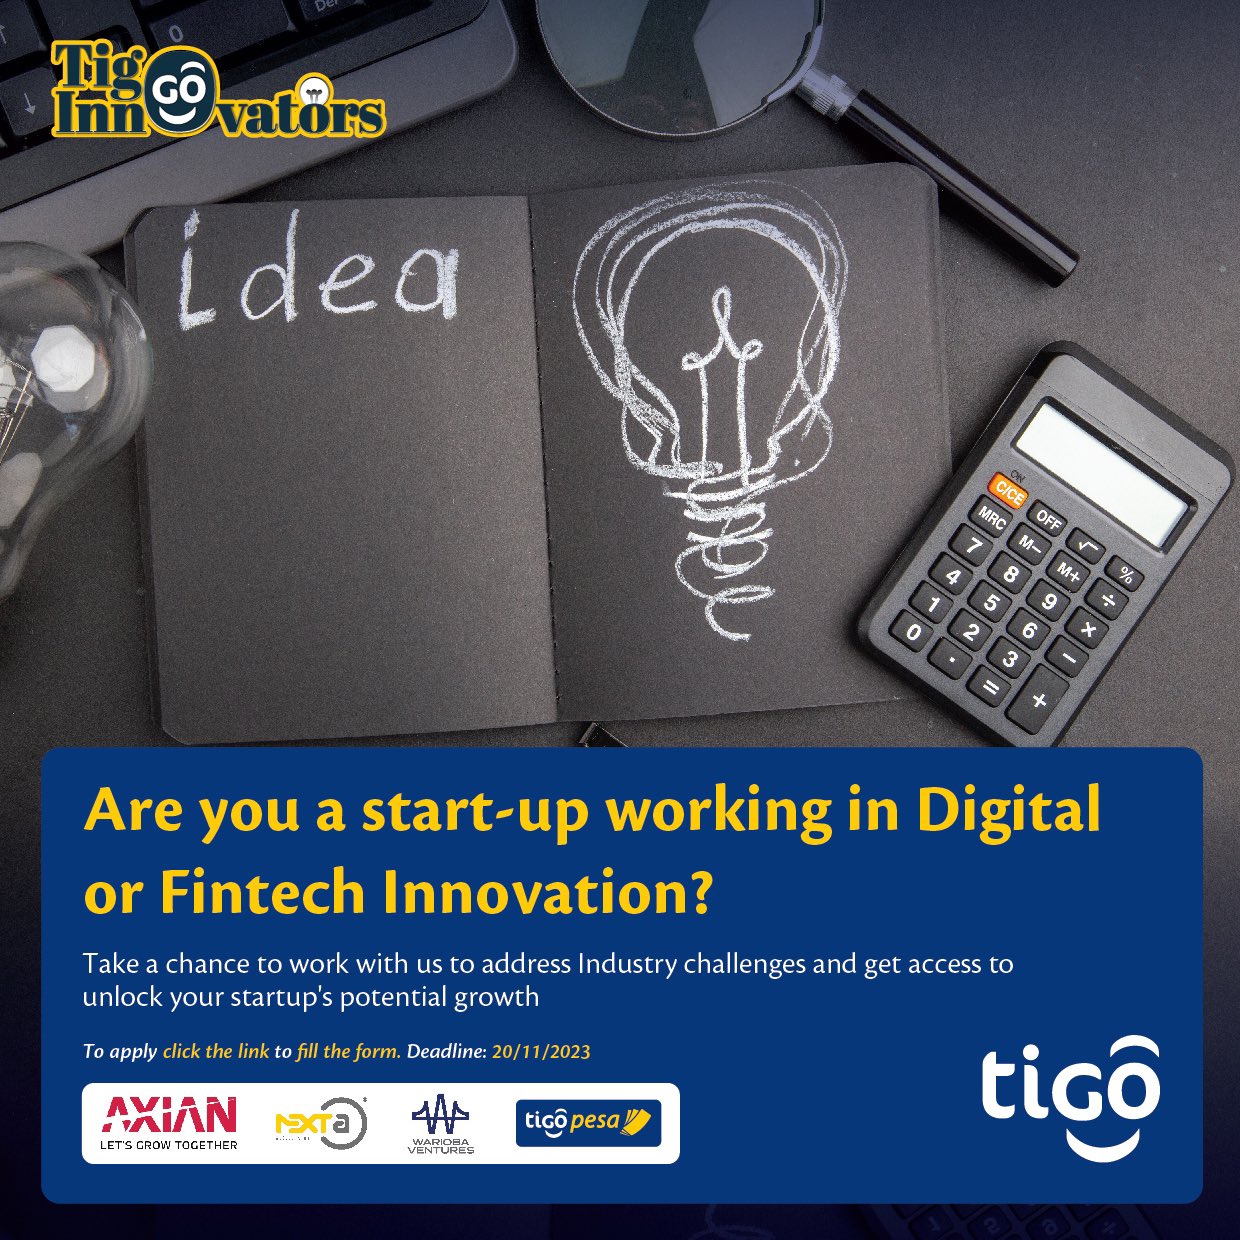 Tigo Tanzania Launches Innovators' Program